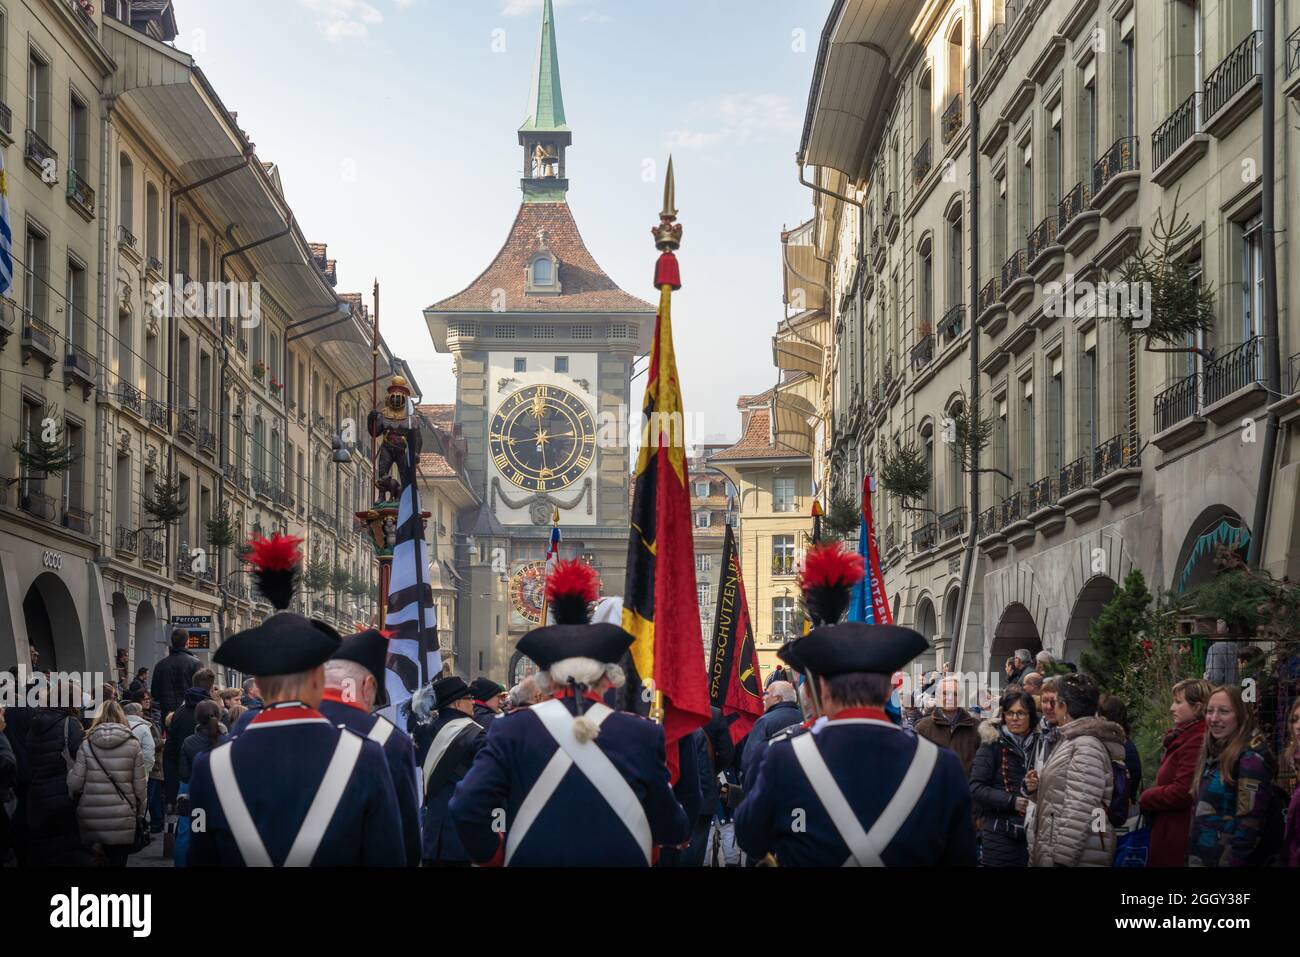 Zytglogge e una sfilata di soldati svizzeri in costume tradizionale durante le vacanze Zibelemarit (mercato delle cipolle) - Berna, Svizzera Foto Stock